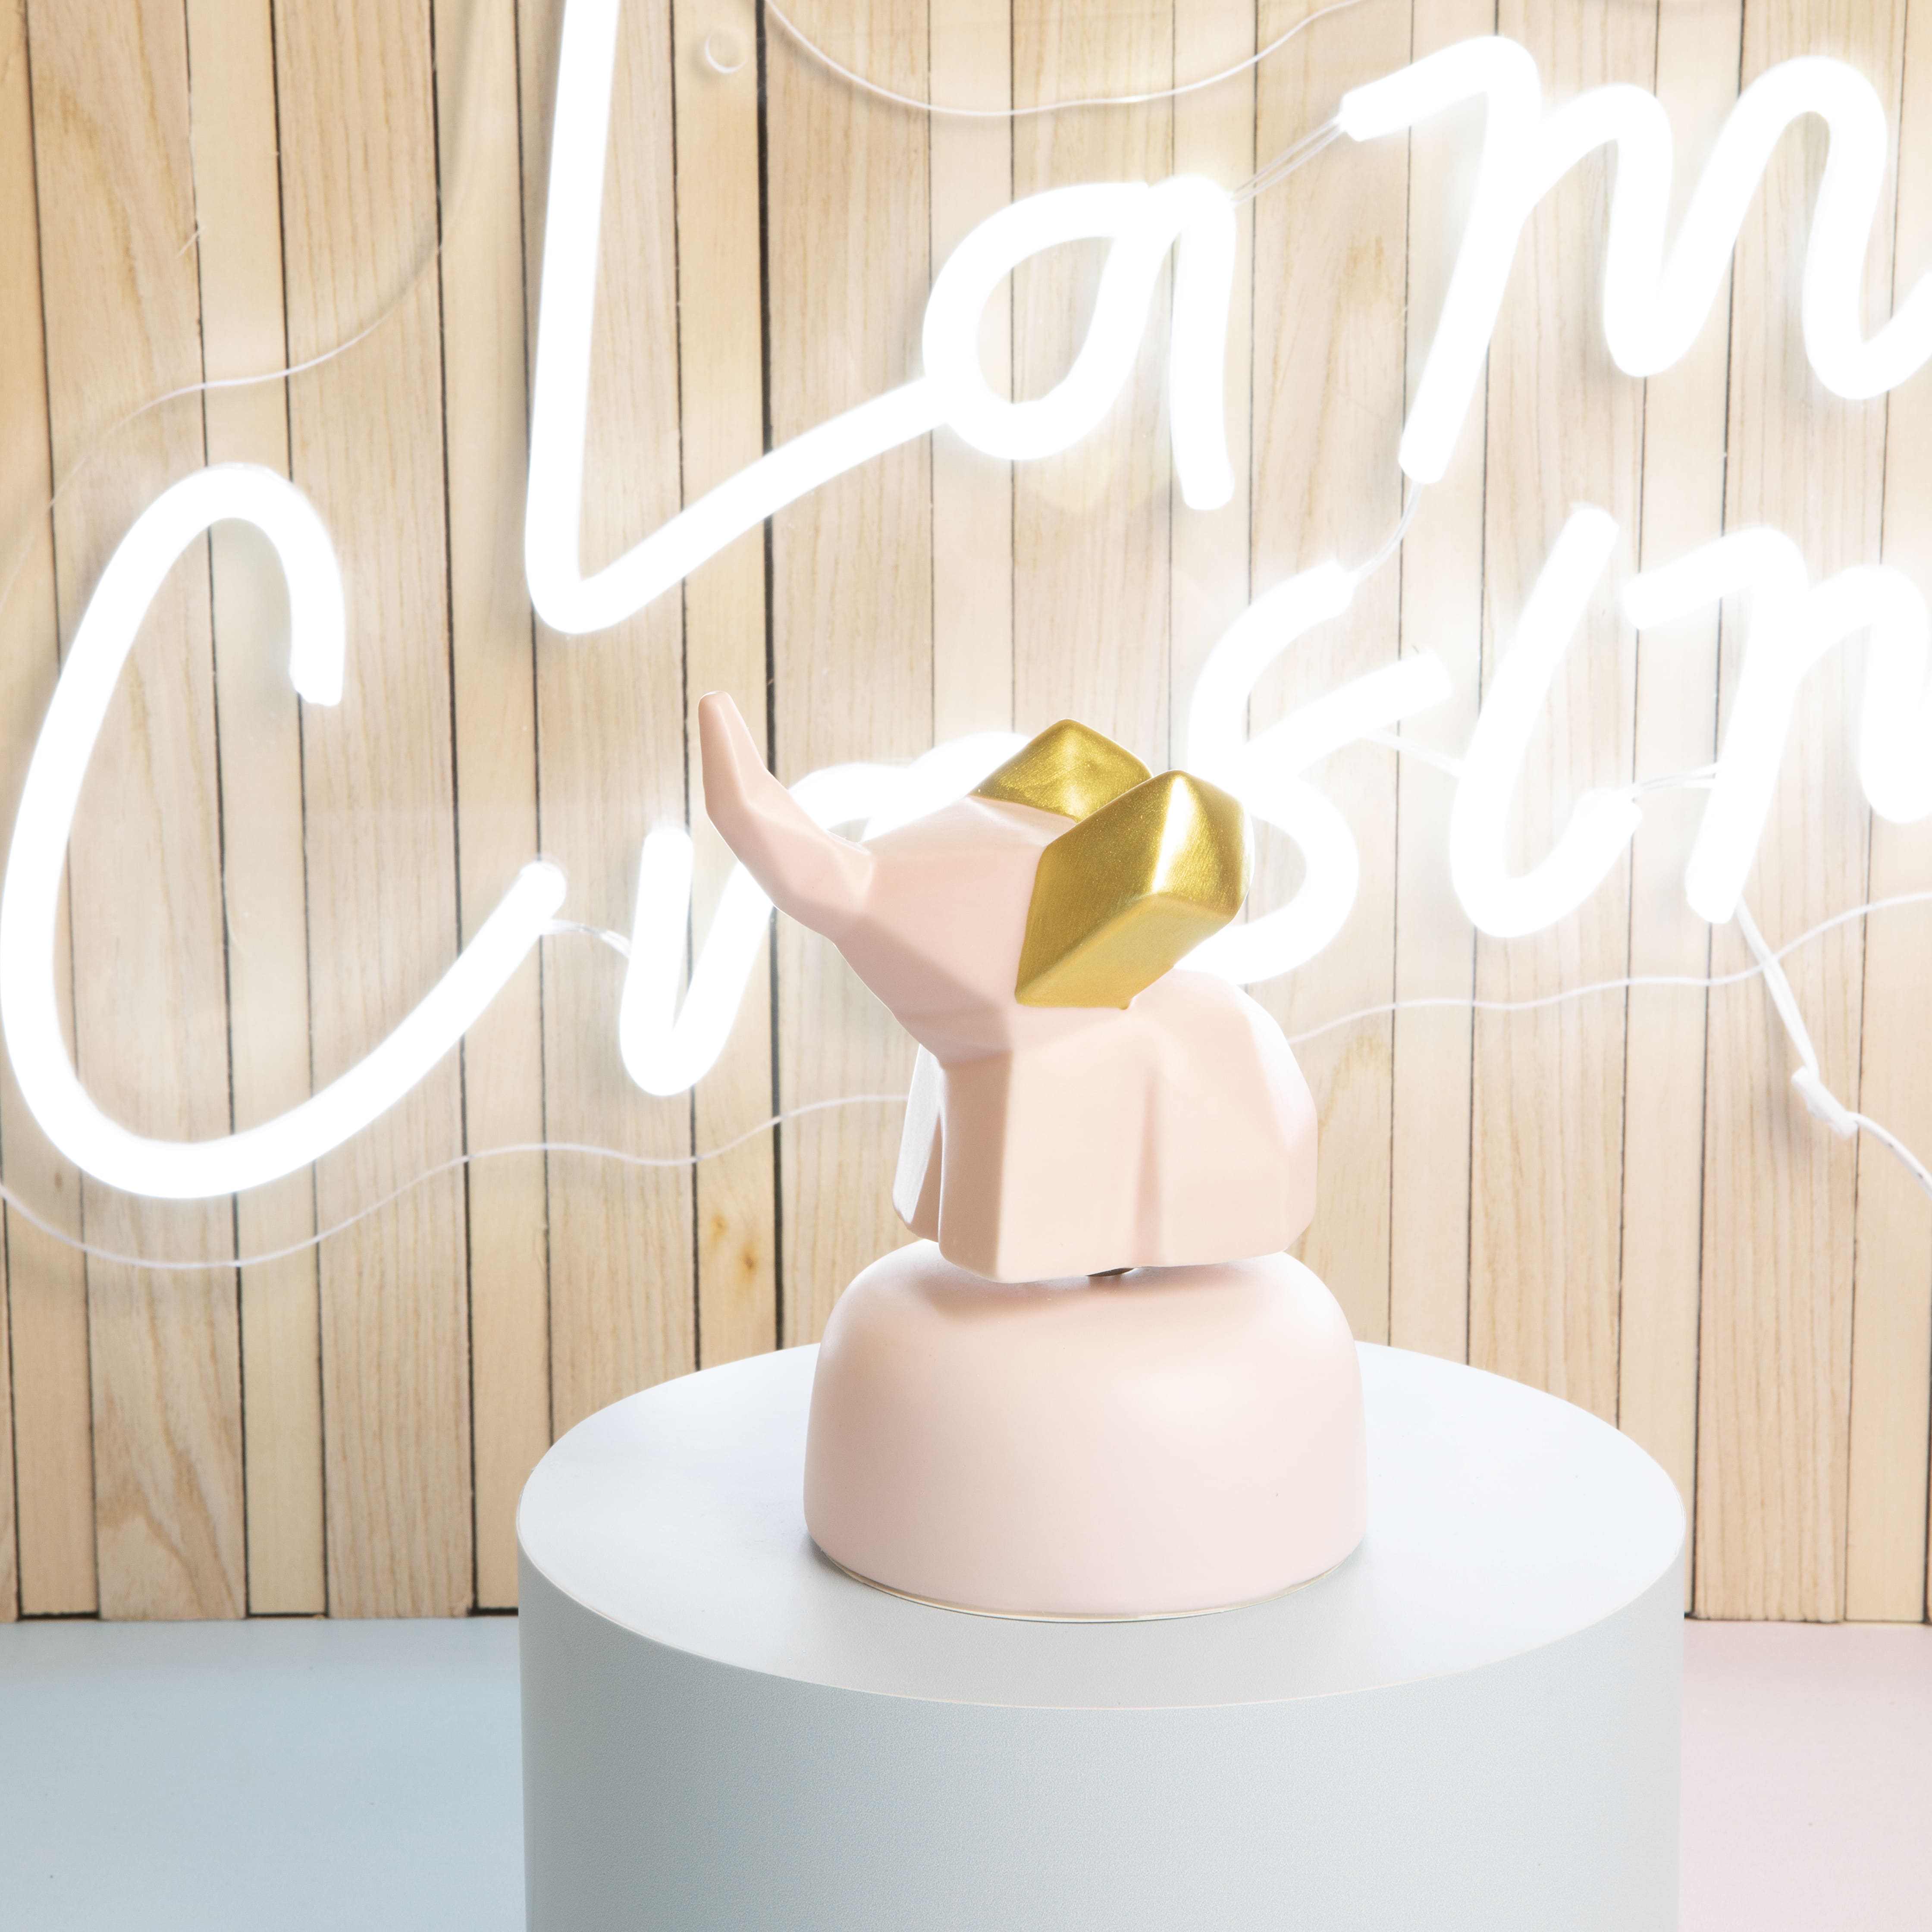 Bomboniera Claraluna Carillon Elefante in ceramica Rosa con orecchie dorate 24963